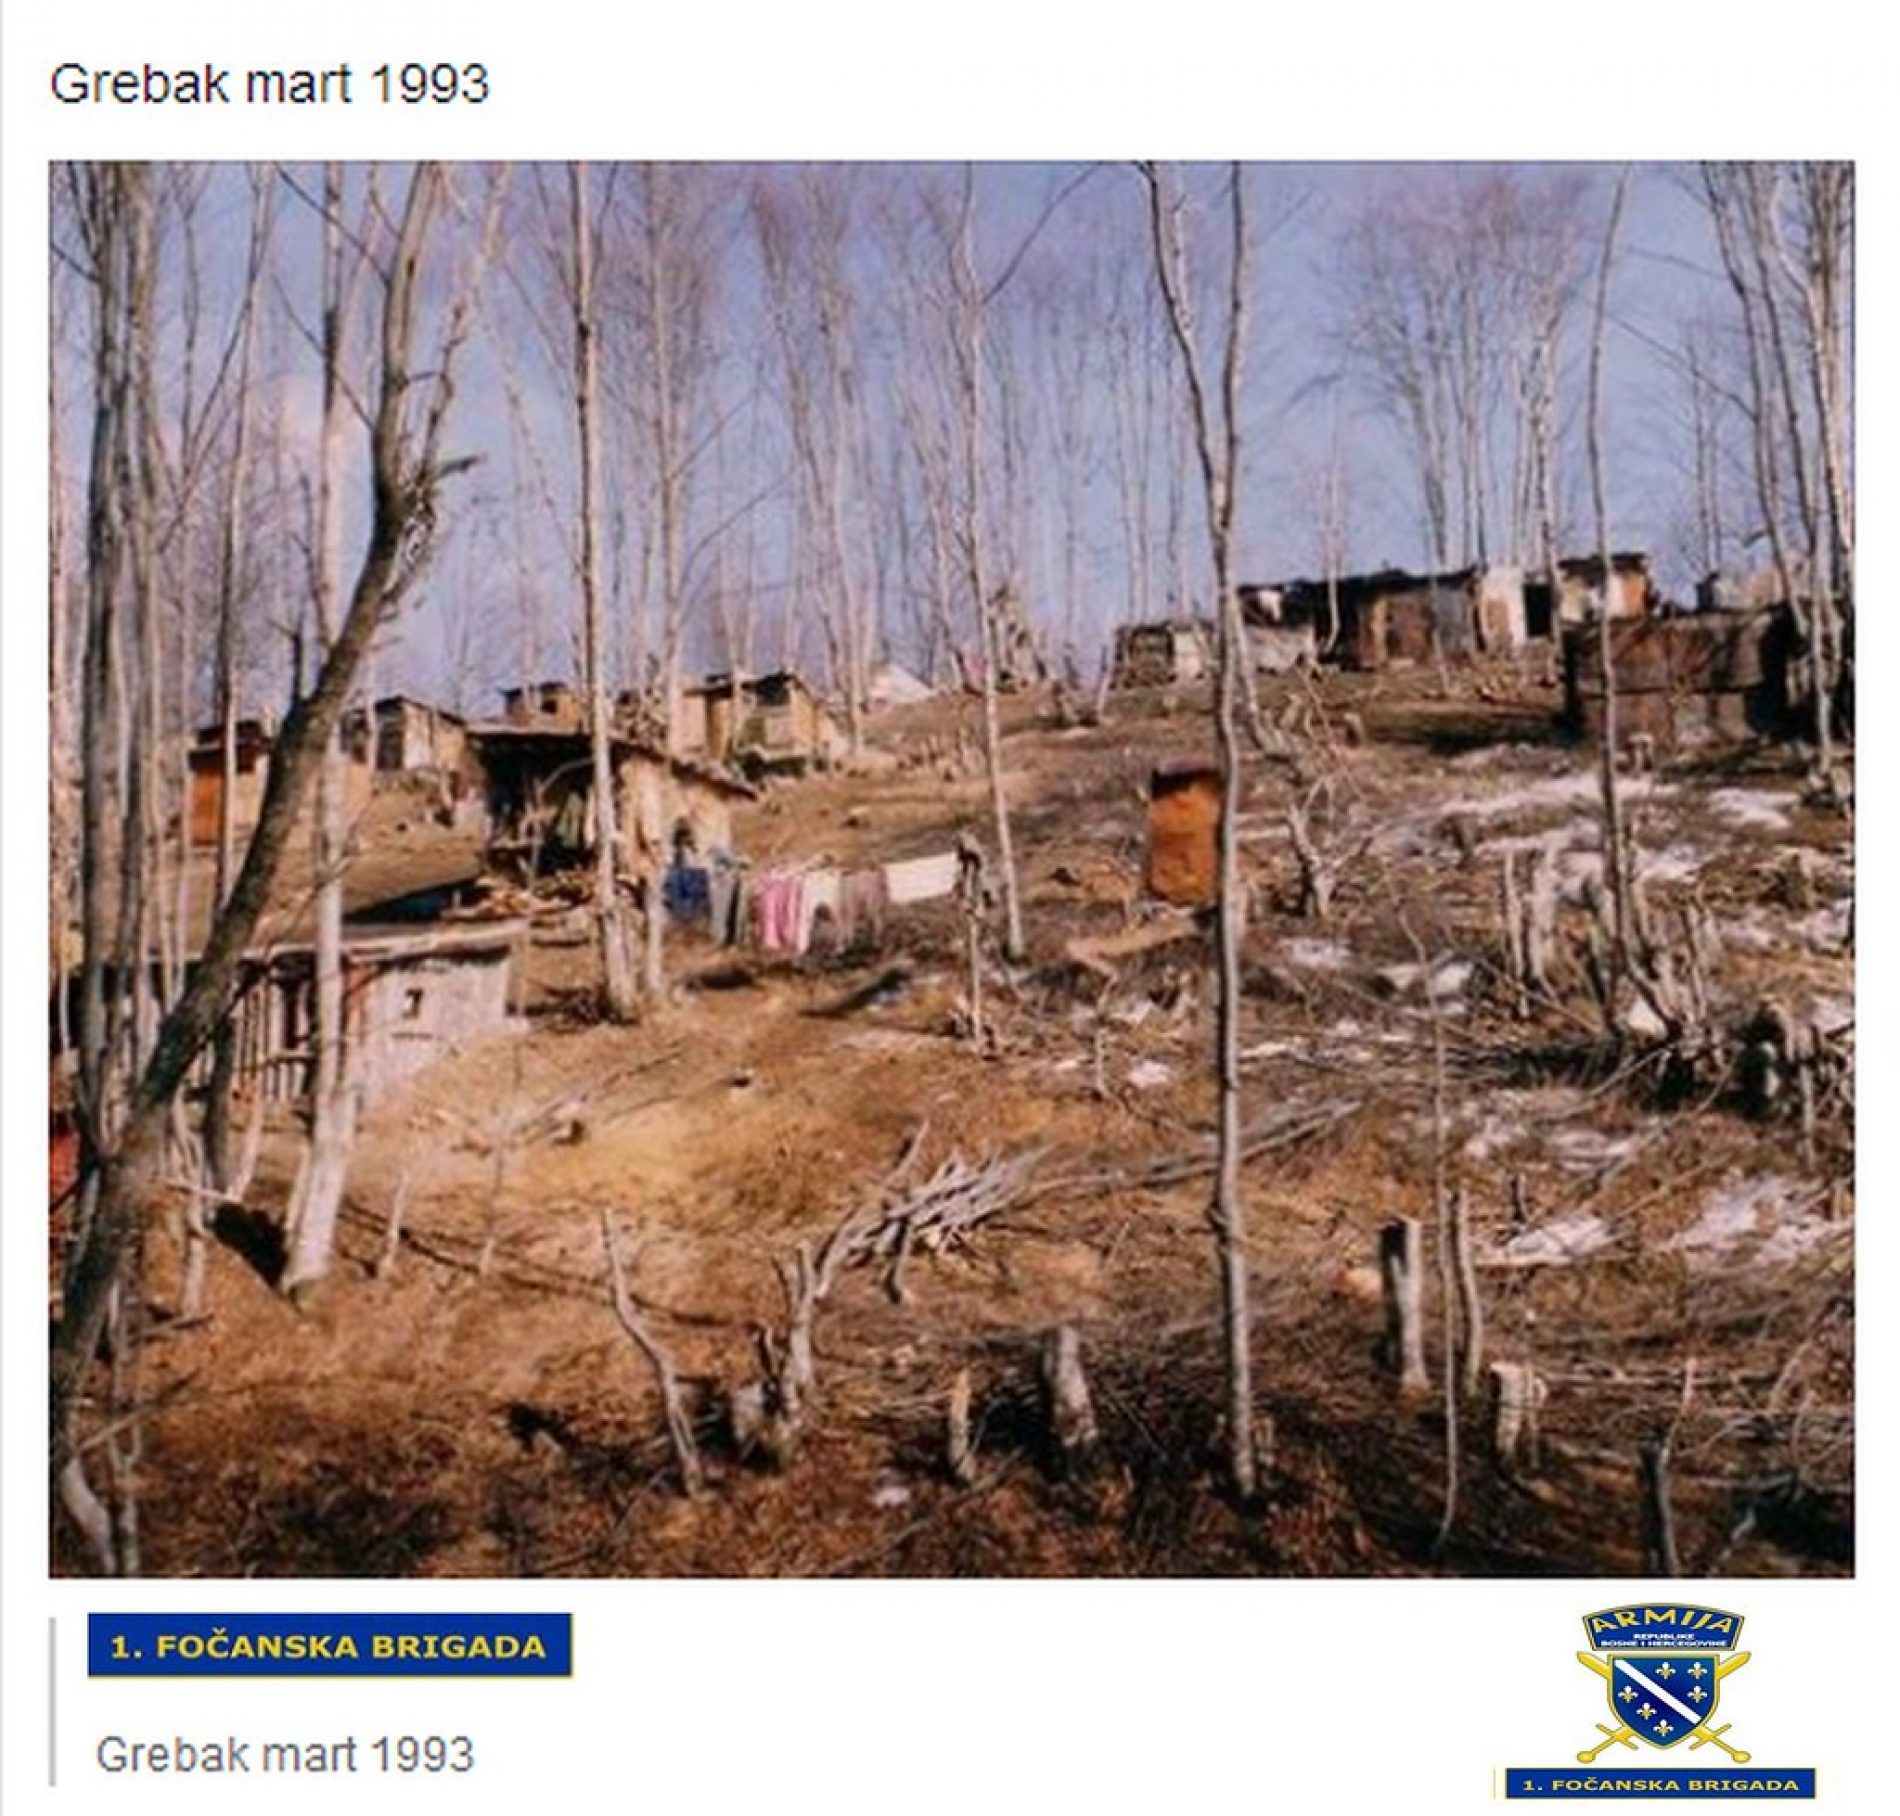 Grebak je bio spas izgladnjelom stanovništvu i ranjenicima tokom opsade Goražda